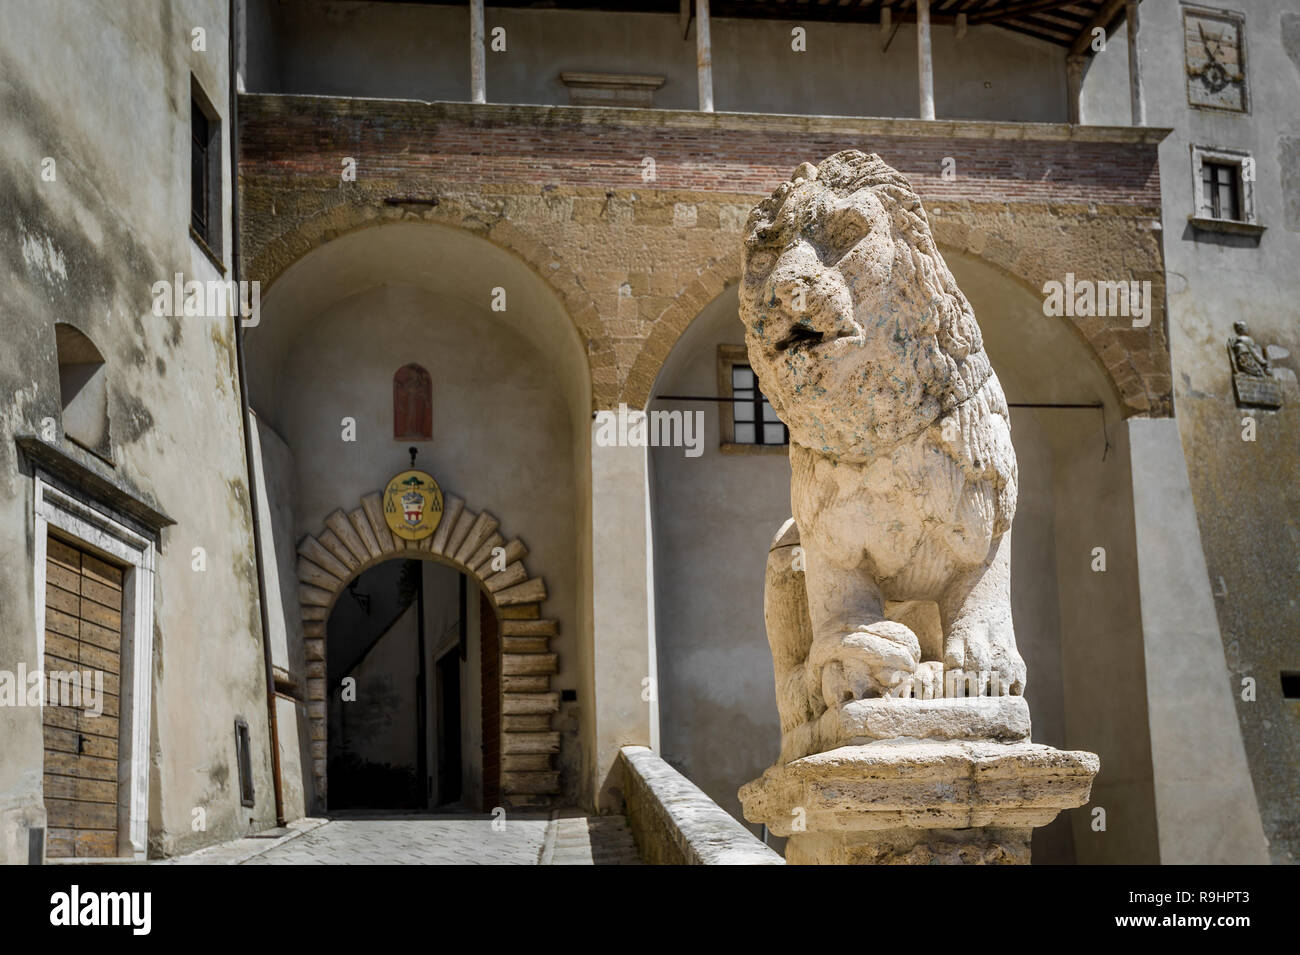 Lion la scultura a Pitigliano città vecchia - turistica popolare stop nella regione Toscana, Italia. Foto Stock